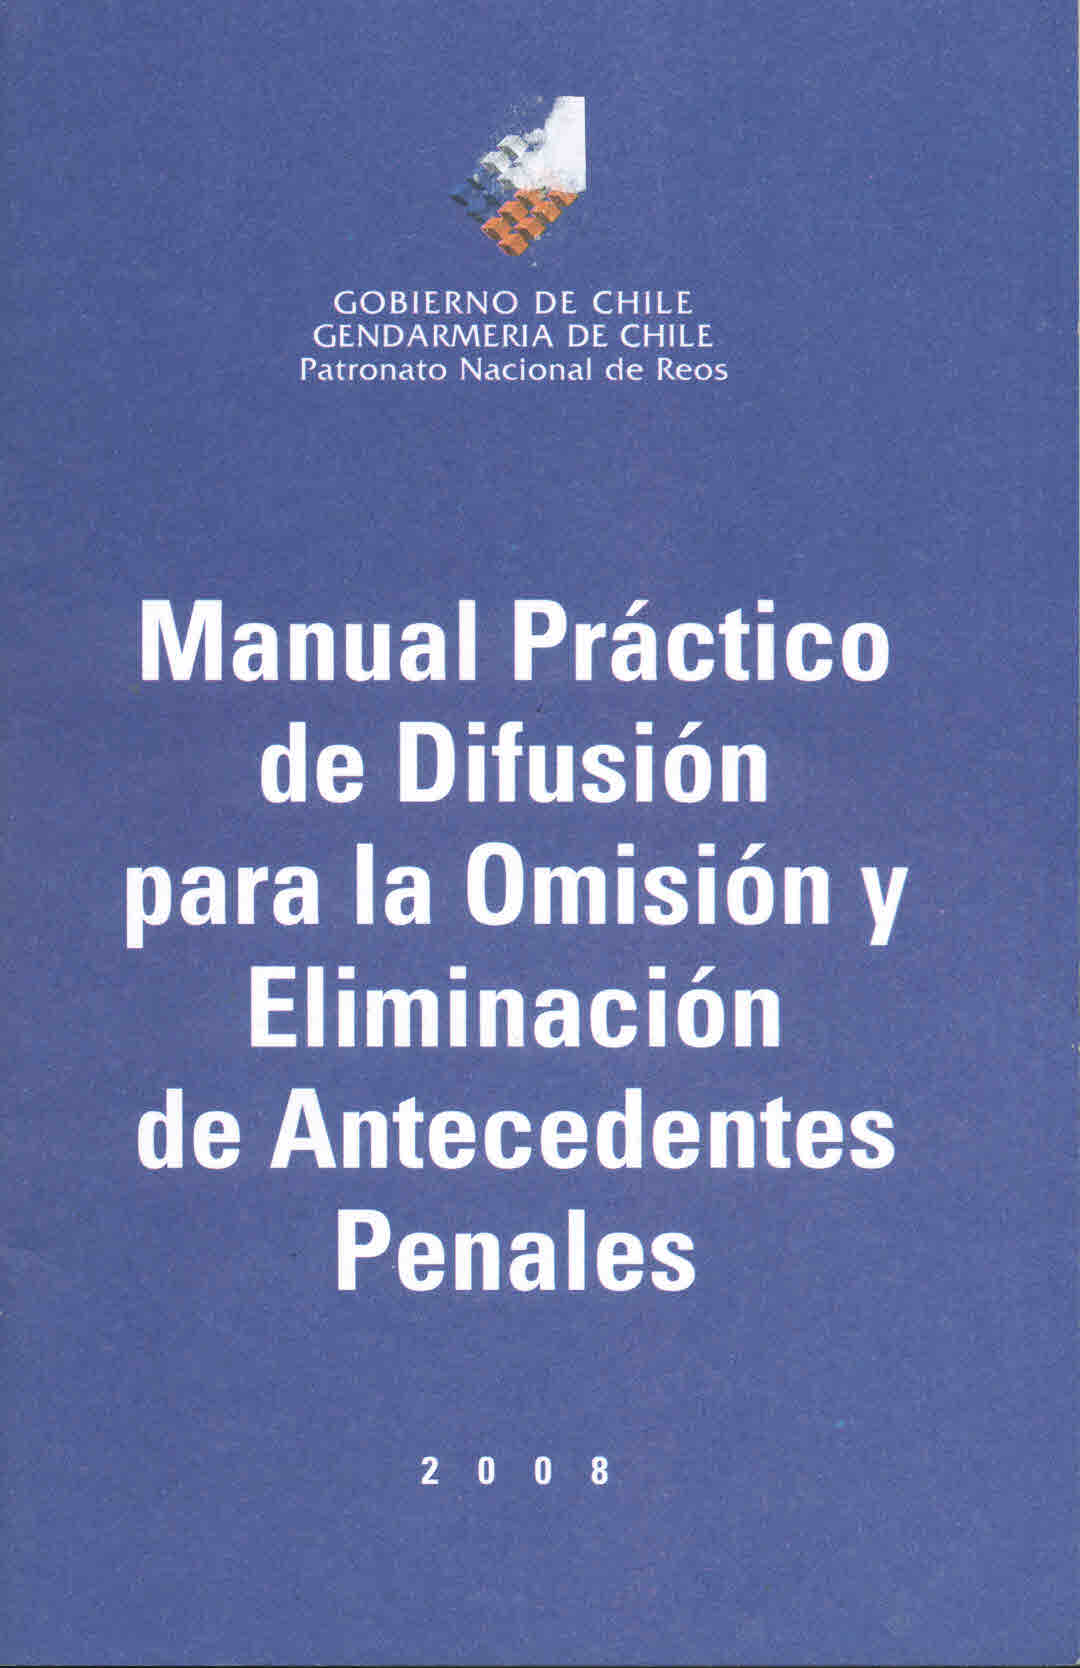 Manual práctico de difusión para la omisión y eliminación de antecedentes penales